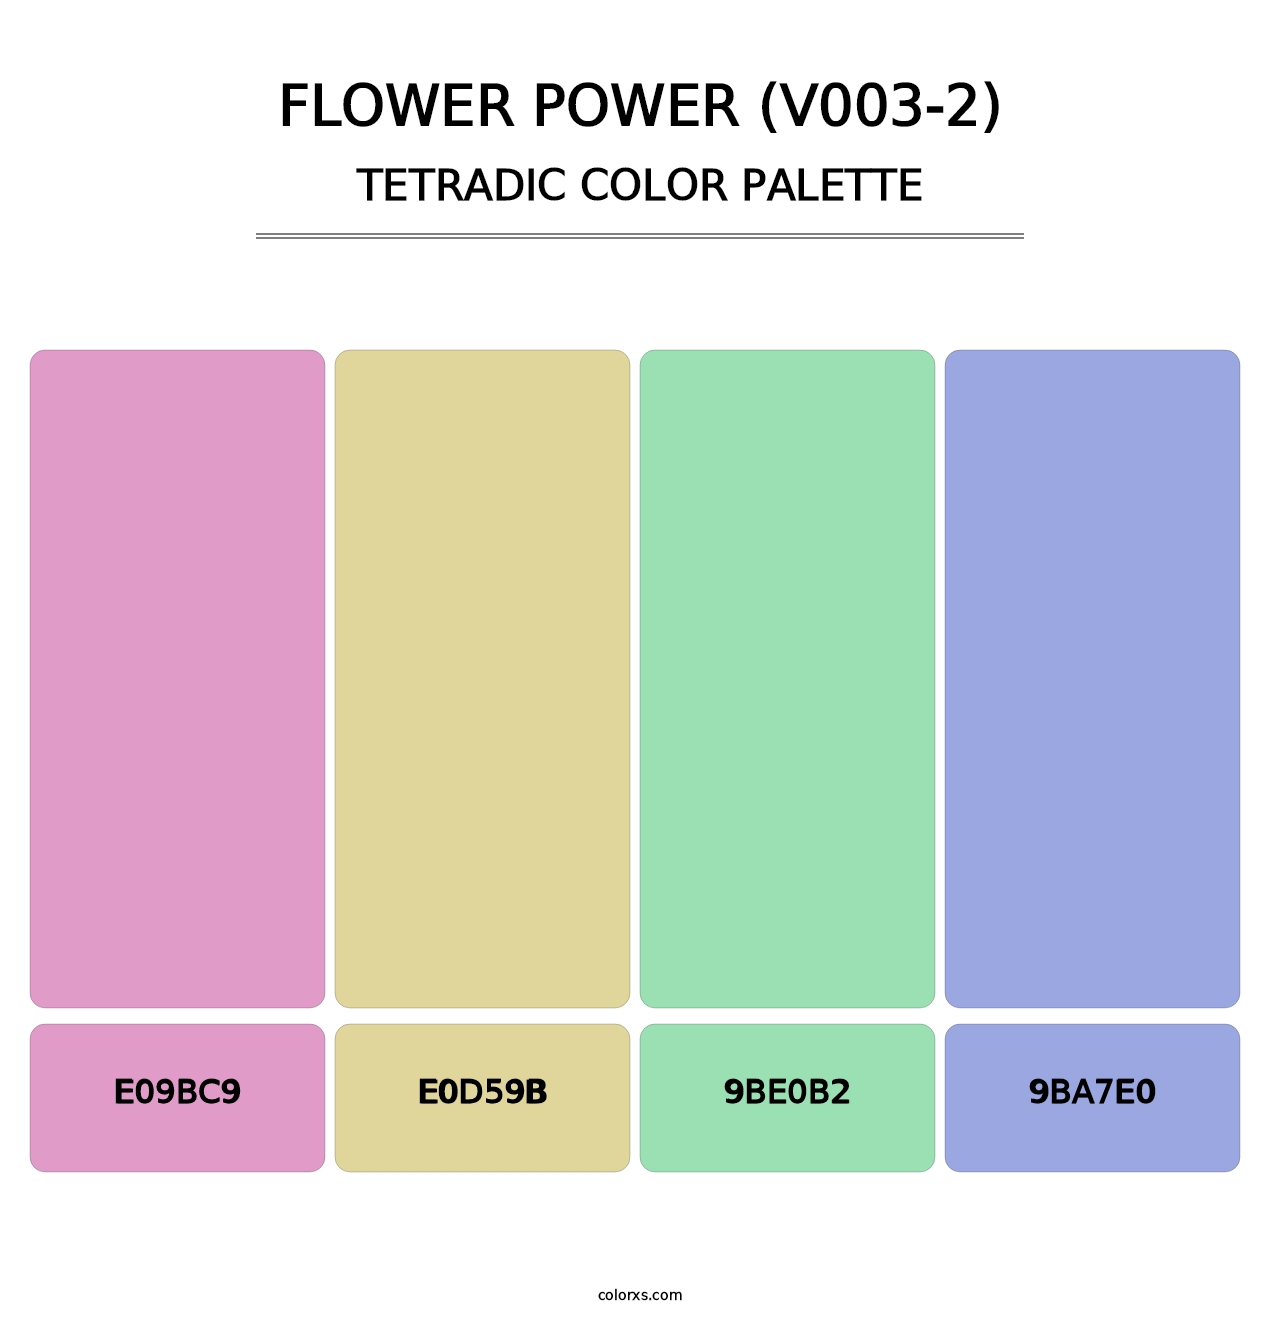 Flower Power (V003-2) - Tetradic Color Palette